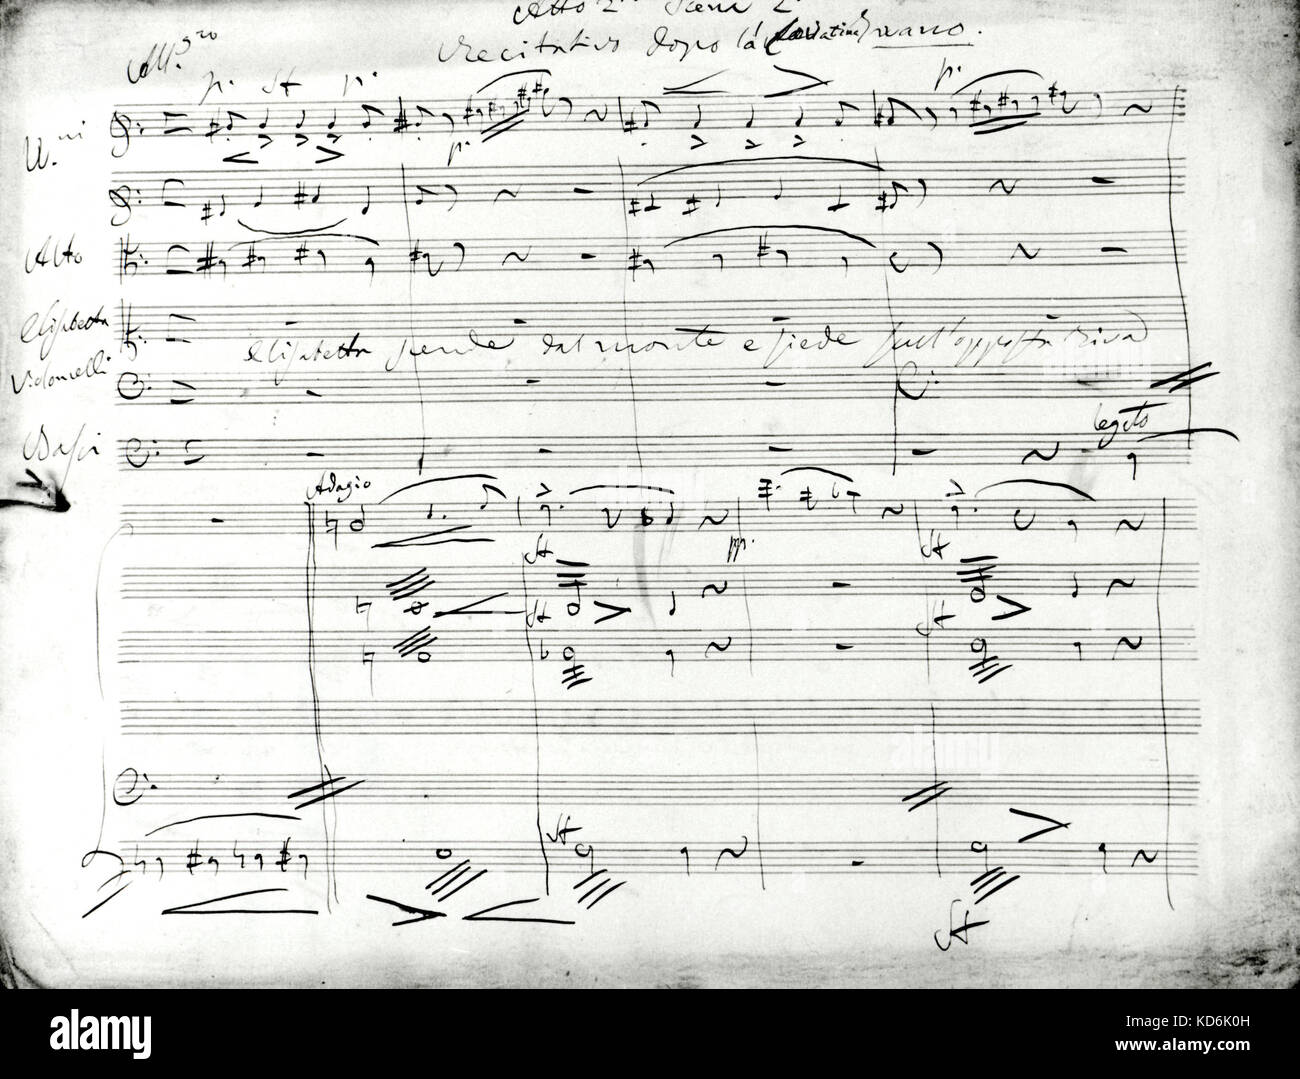 Donizetti scritto a mano punteggio ottenuto per la sua opera "Elisabetta', atto II, scena II. Foto Stock